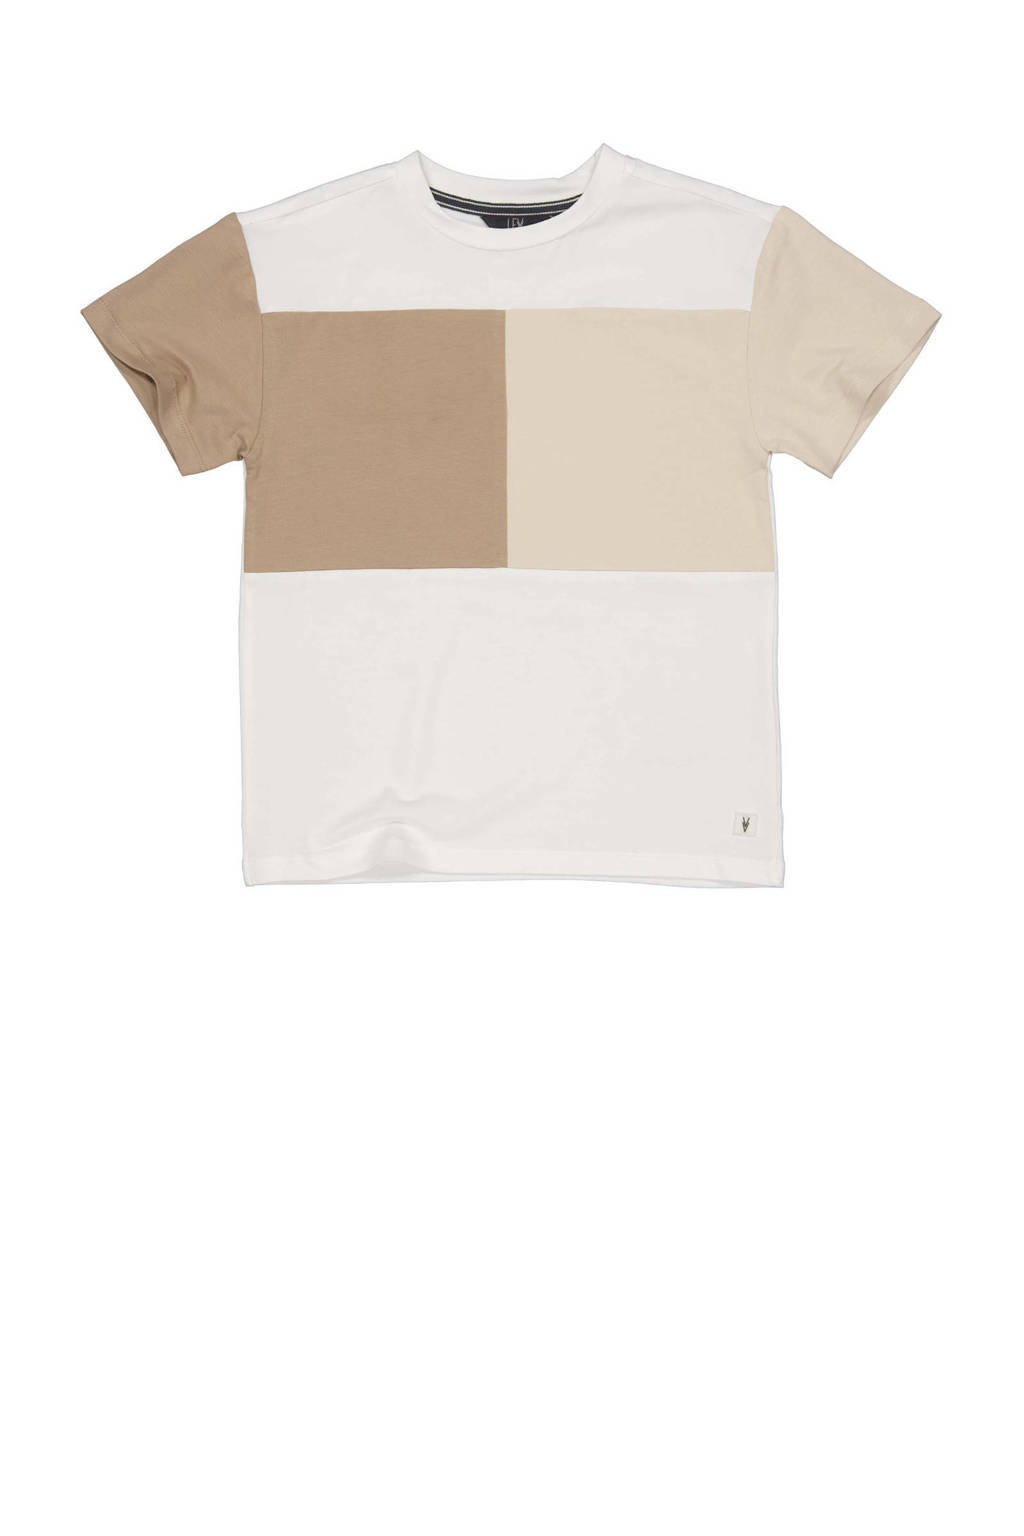 T-shirt KASPER wit/bruin/beige